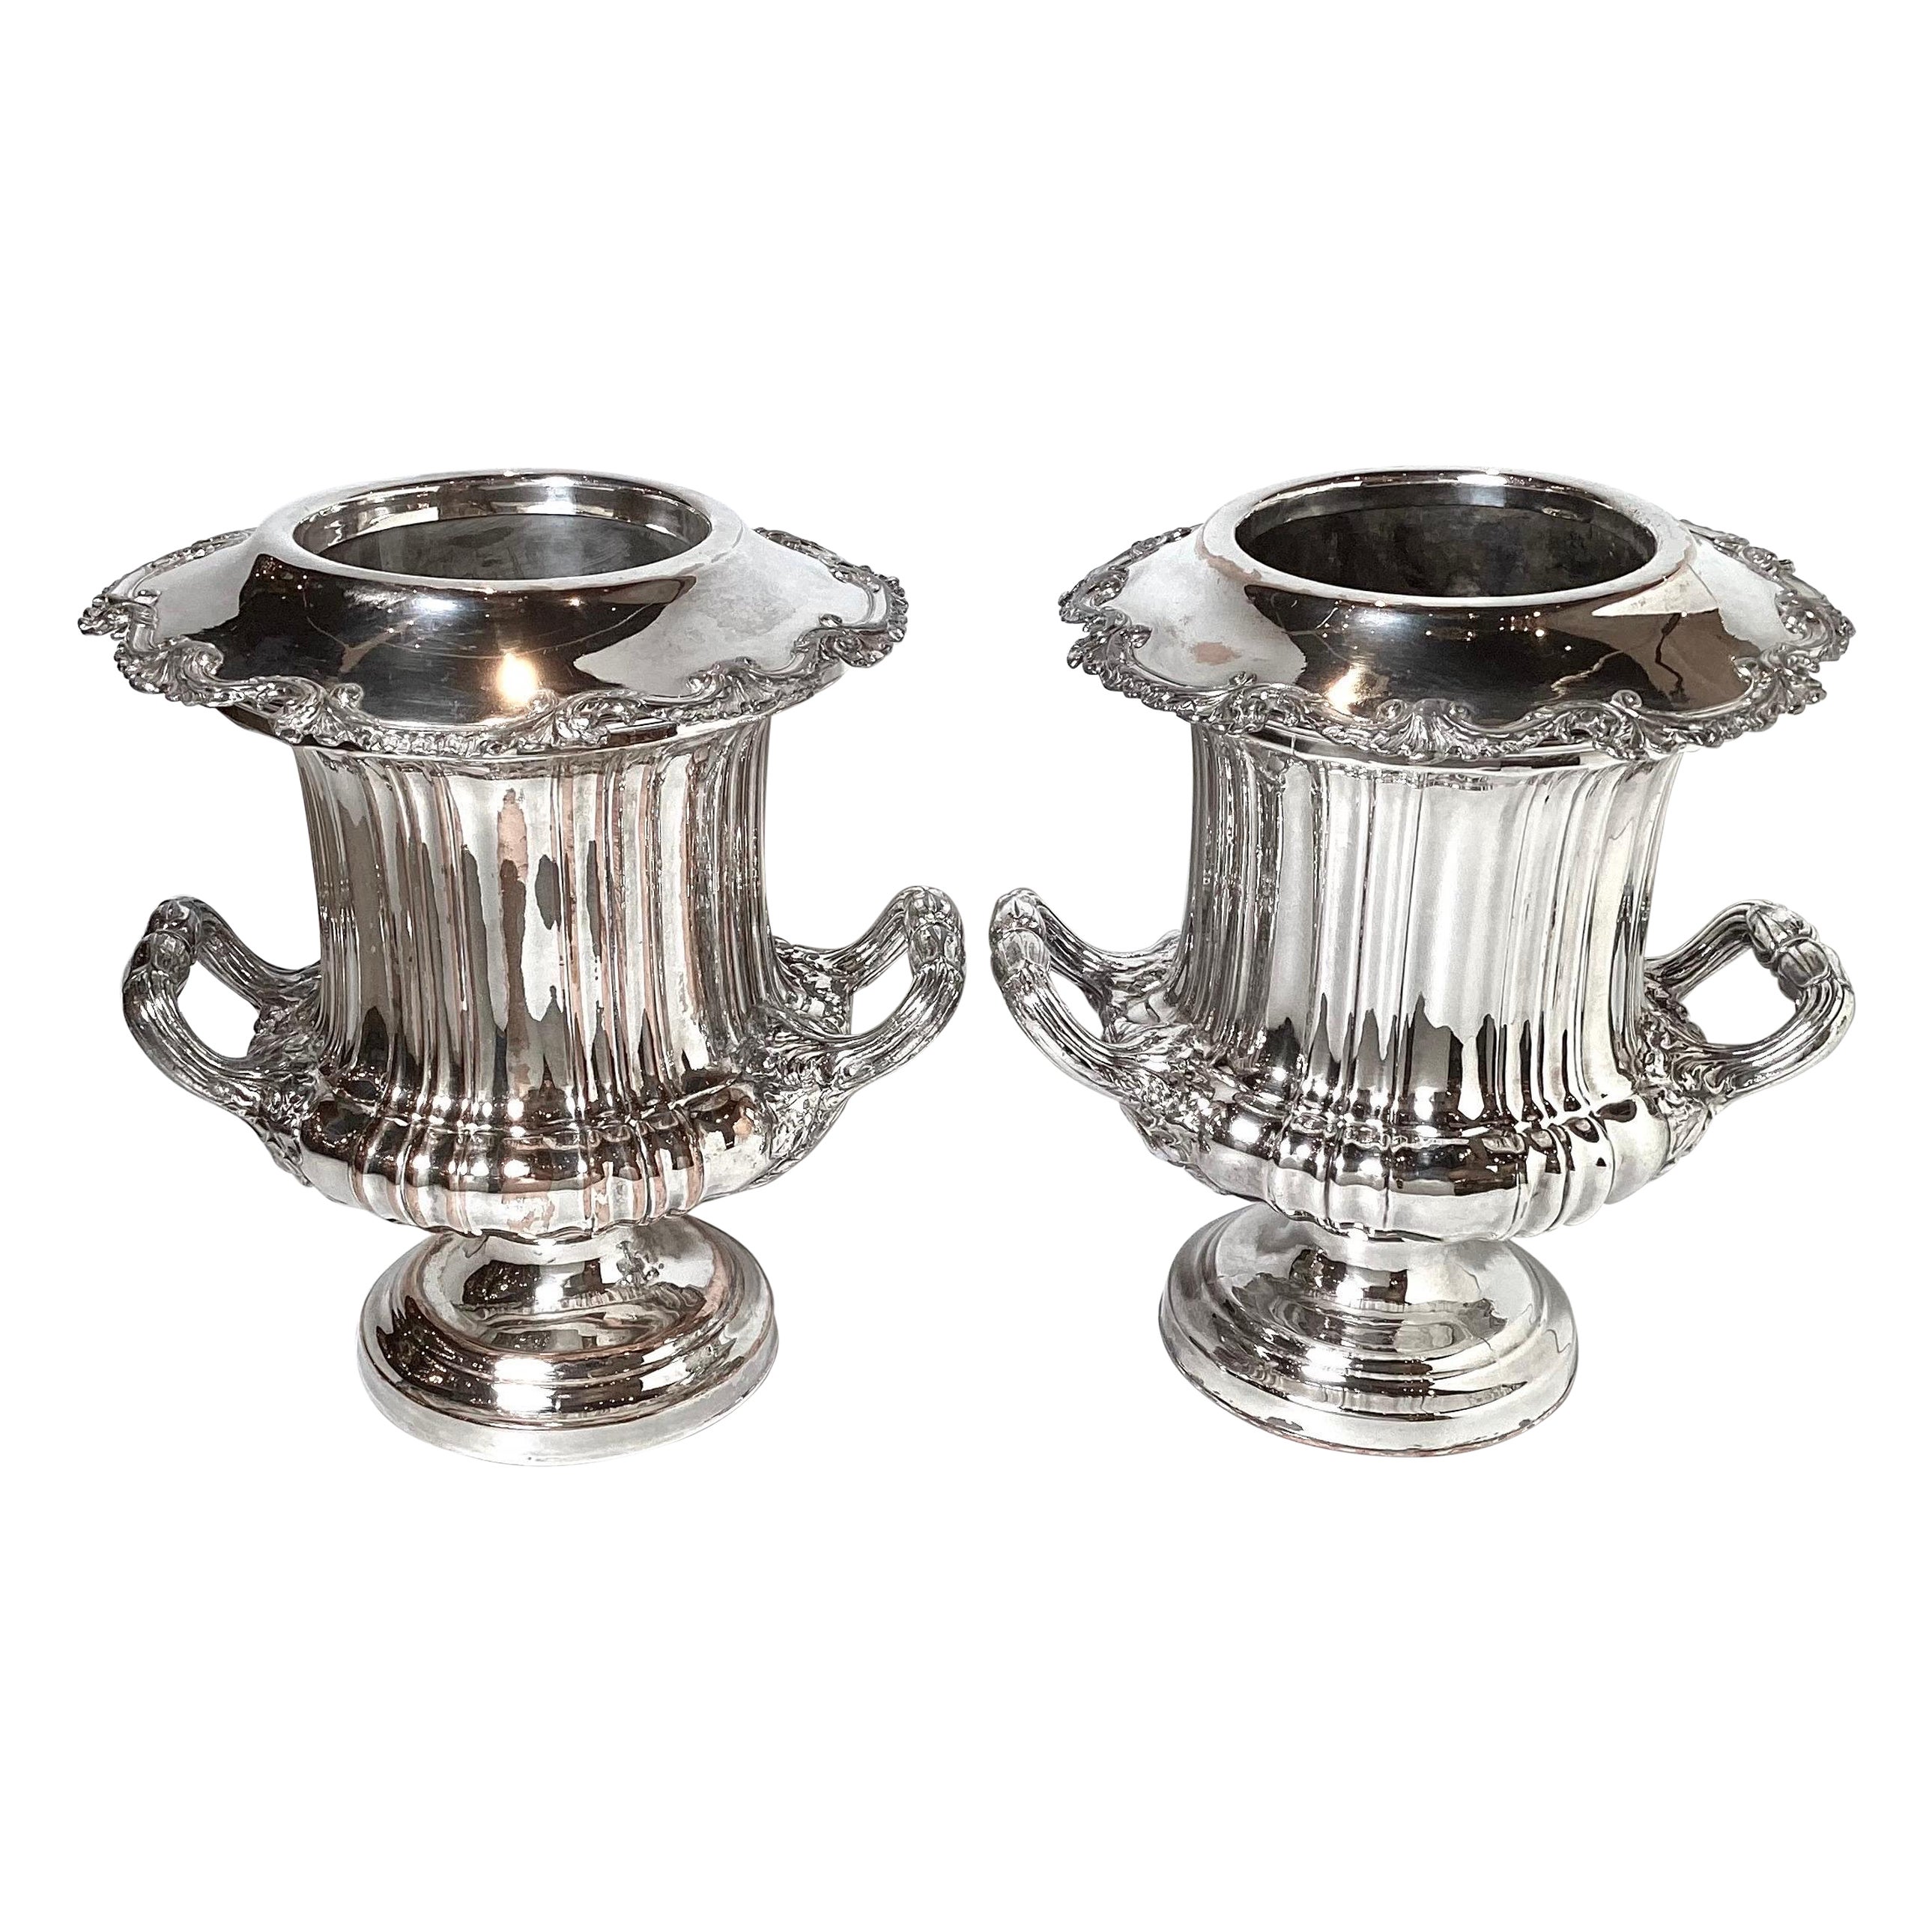 Ein Paar versilberte Campana-Urnen- Champaigne-Kühler aus Kupfer